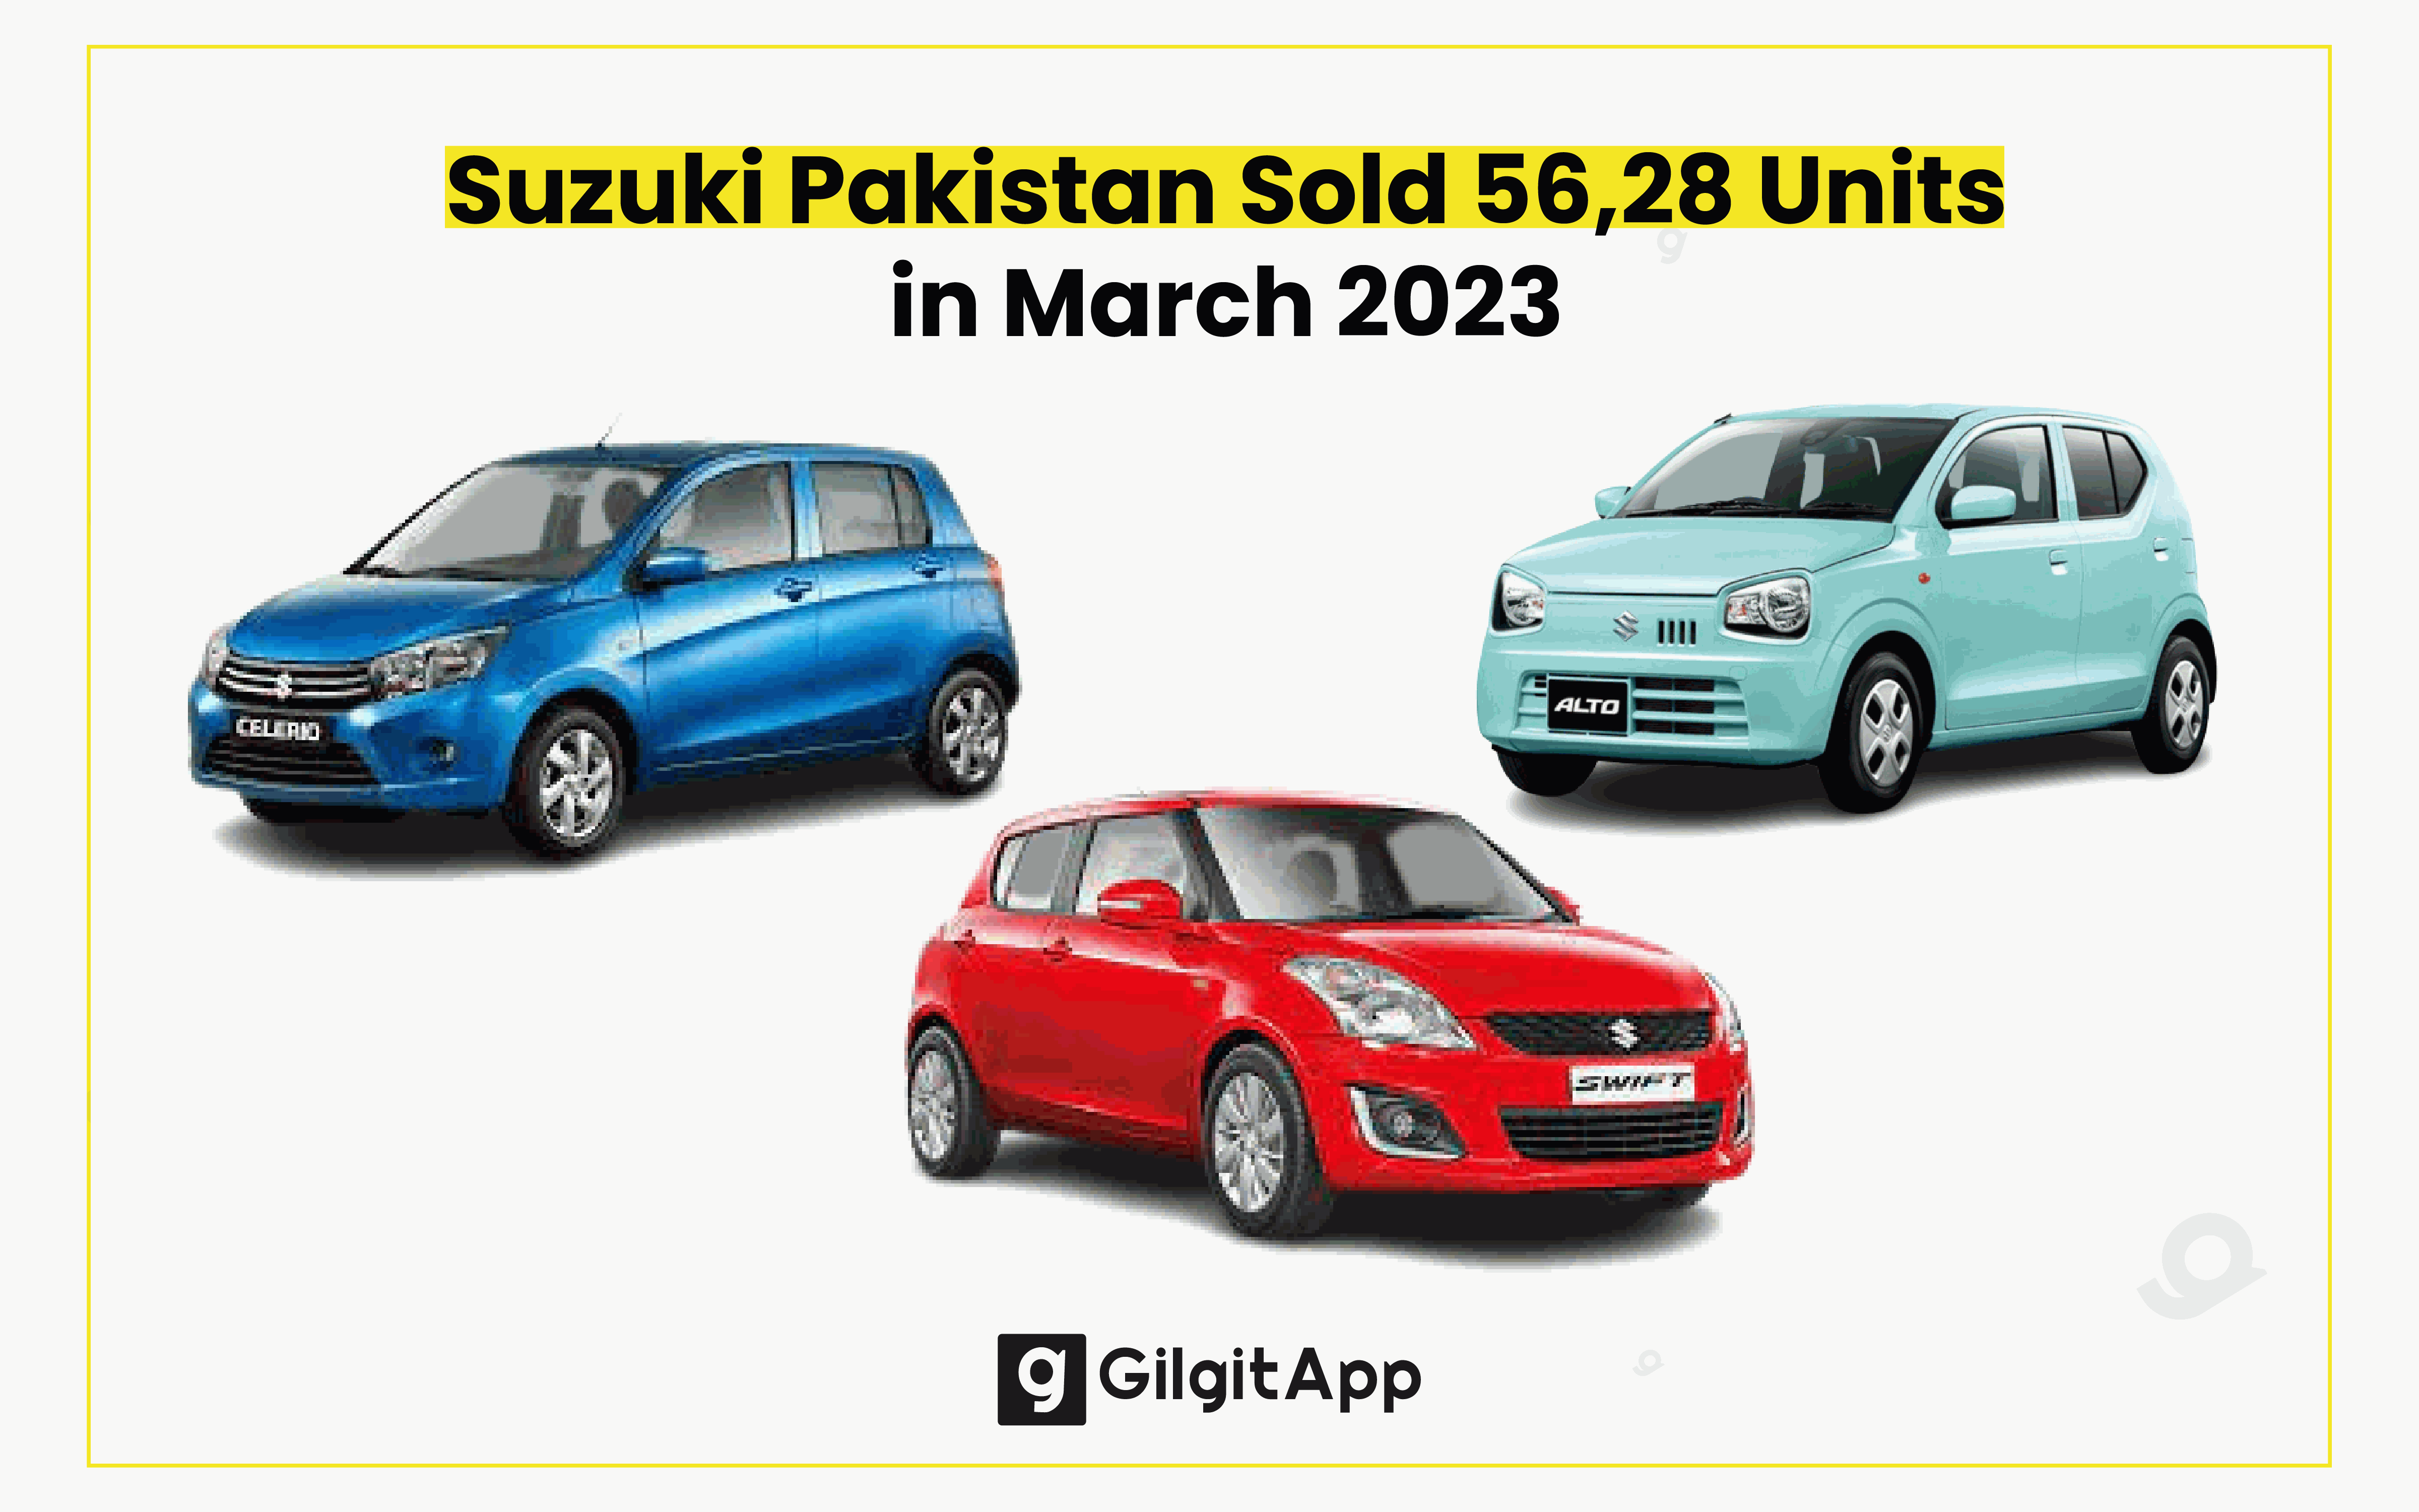 Suzuki Pakistan Sold 56,28 Units in March 2023